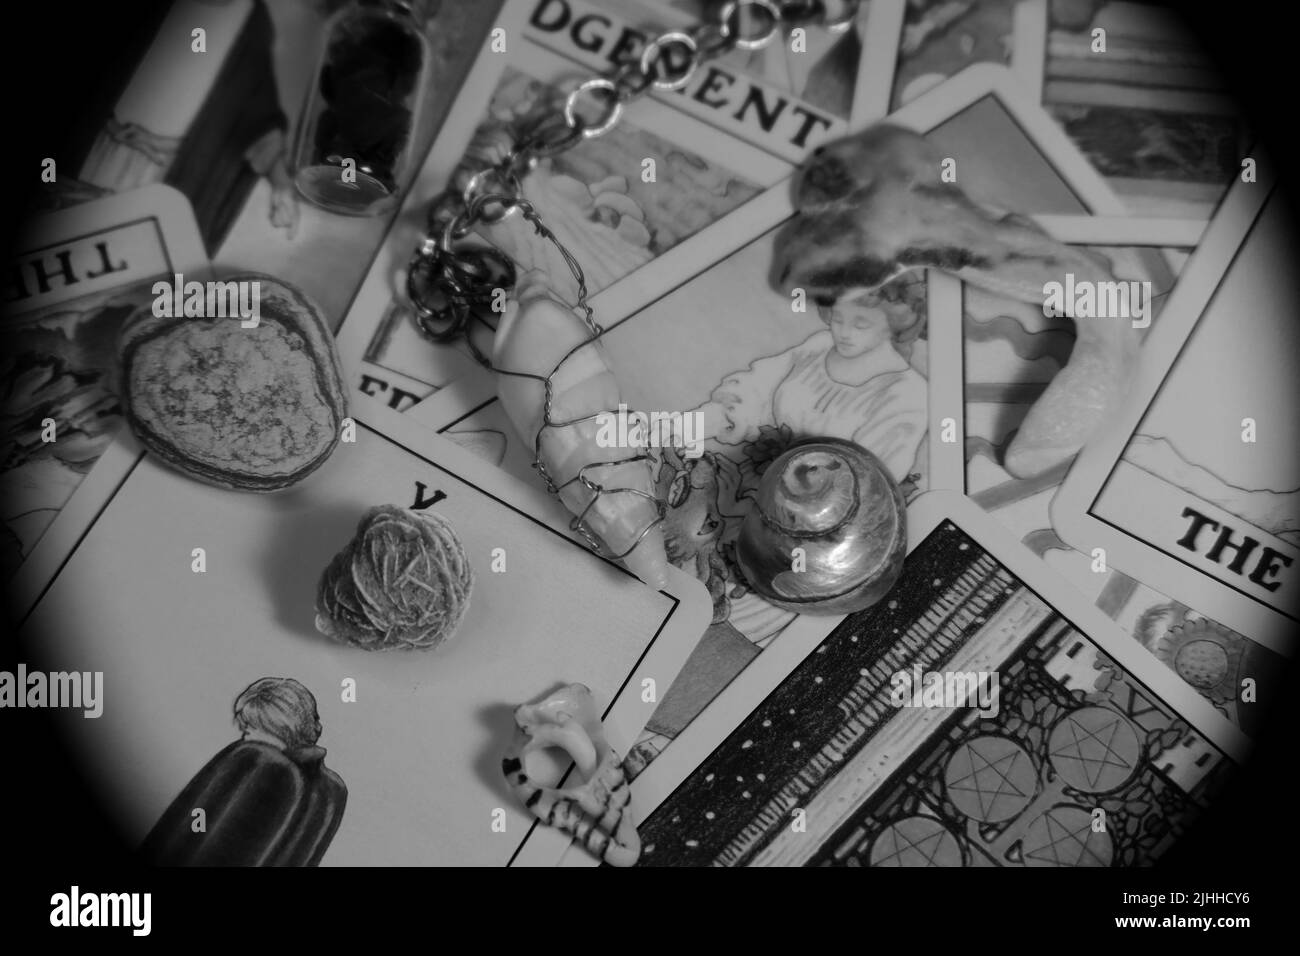 Una collezione di oggetti probabilmente trovati in qualcuno scatola di trinket, o le tasche di un goblin. Sfondo della scheda Tarot. Foto Stock